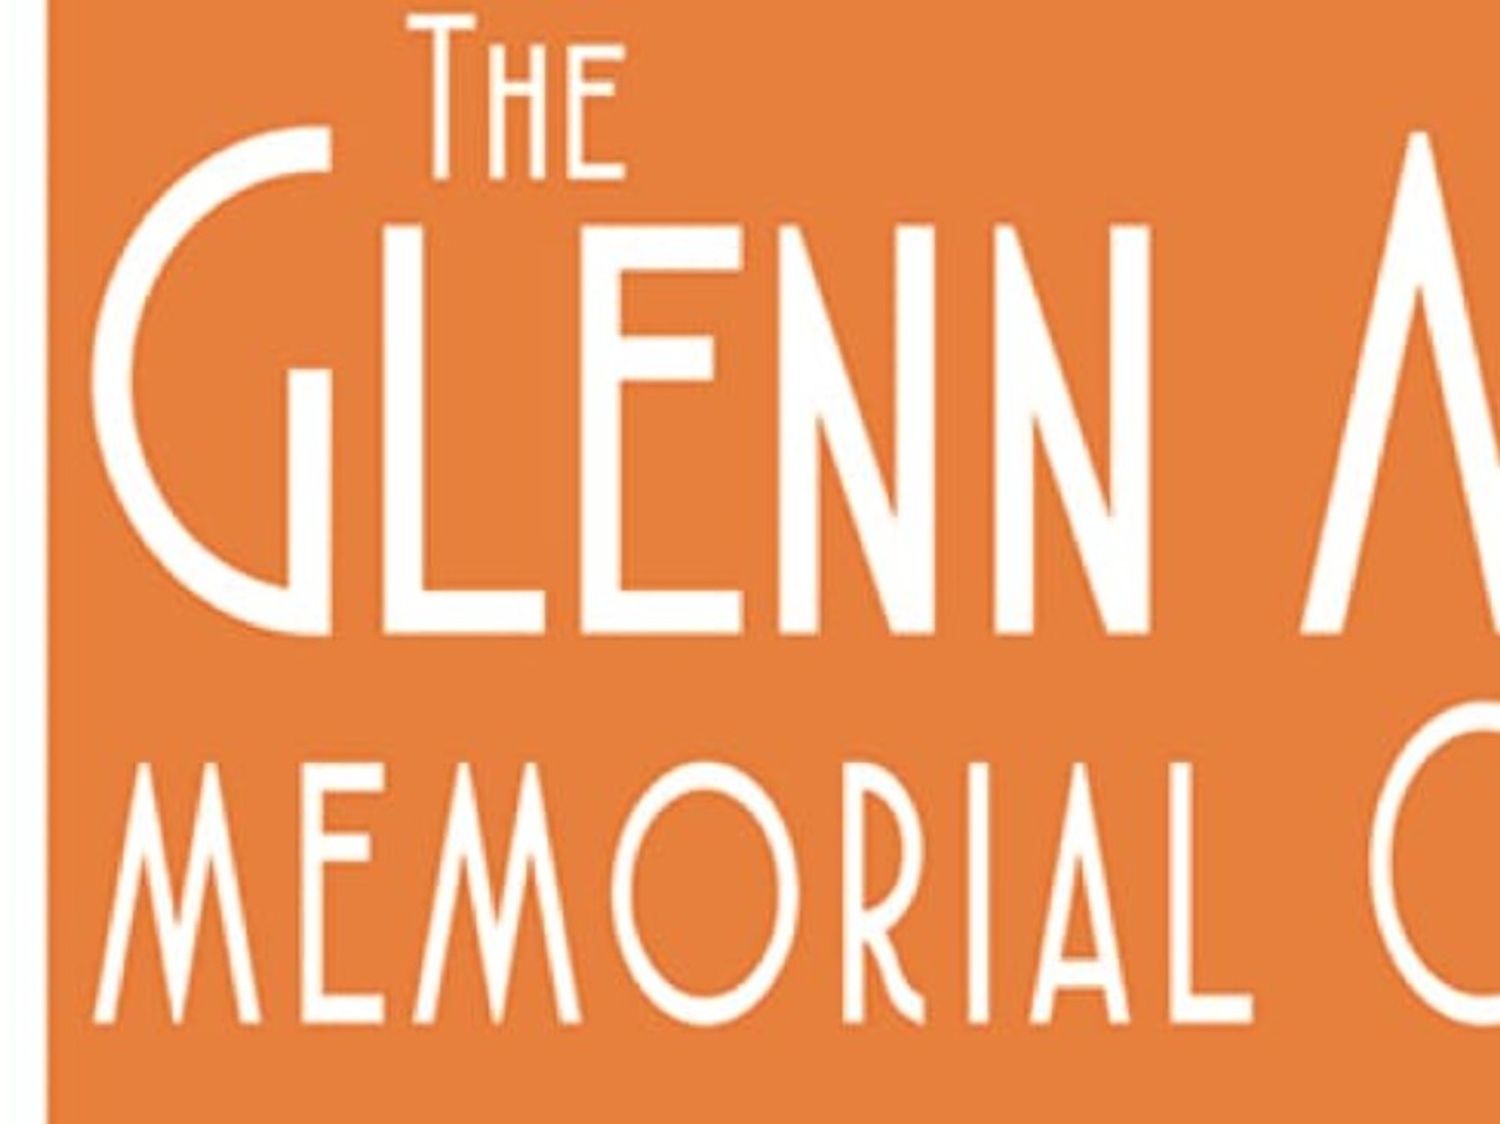 The Glenn Miller Memorial Orchestra